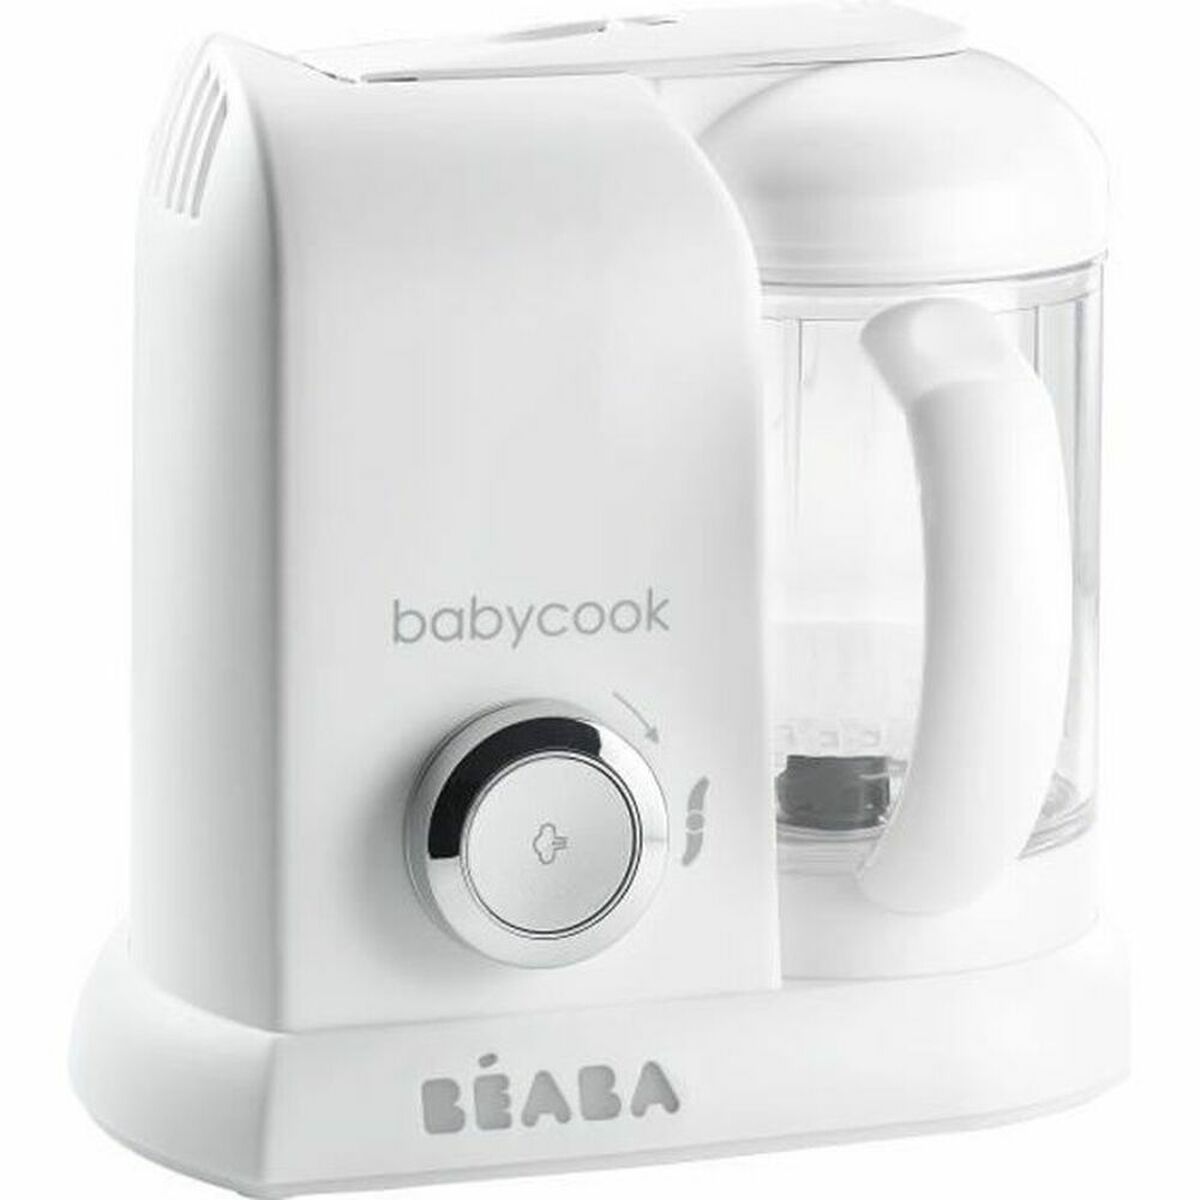 Küchenmaschine Béaba Babycook Solo Weiß 1,1 L - CA International 